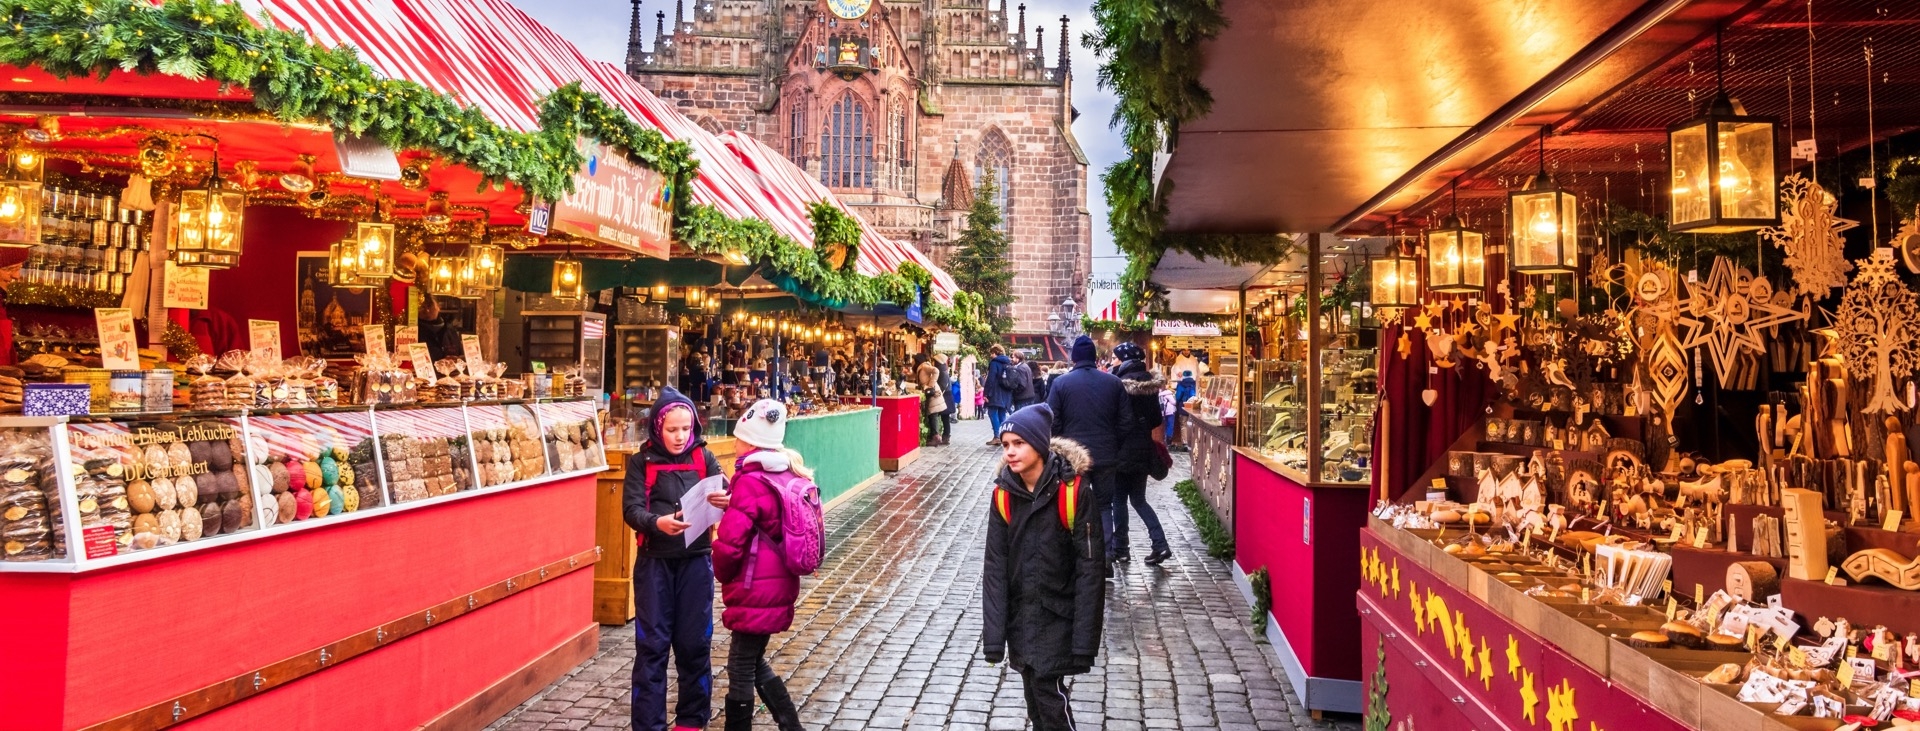 Alman Kylerinde Noel Pazarlar